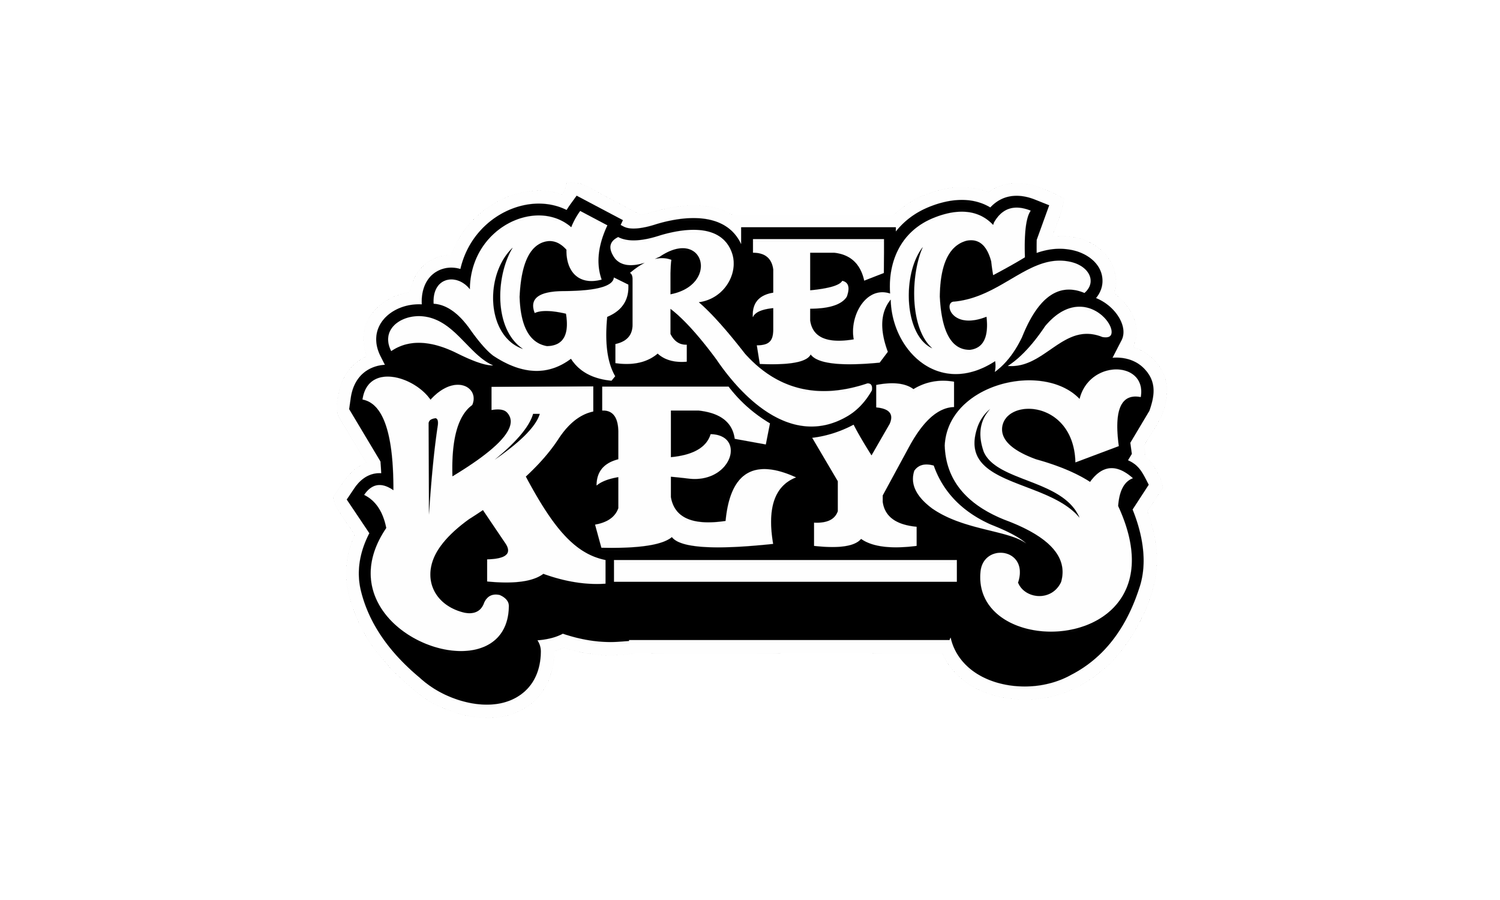 Greg Keys &amp; Co